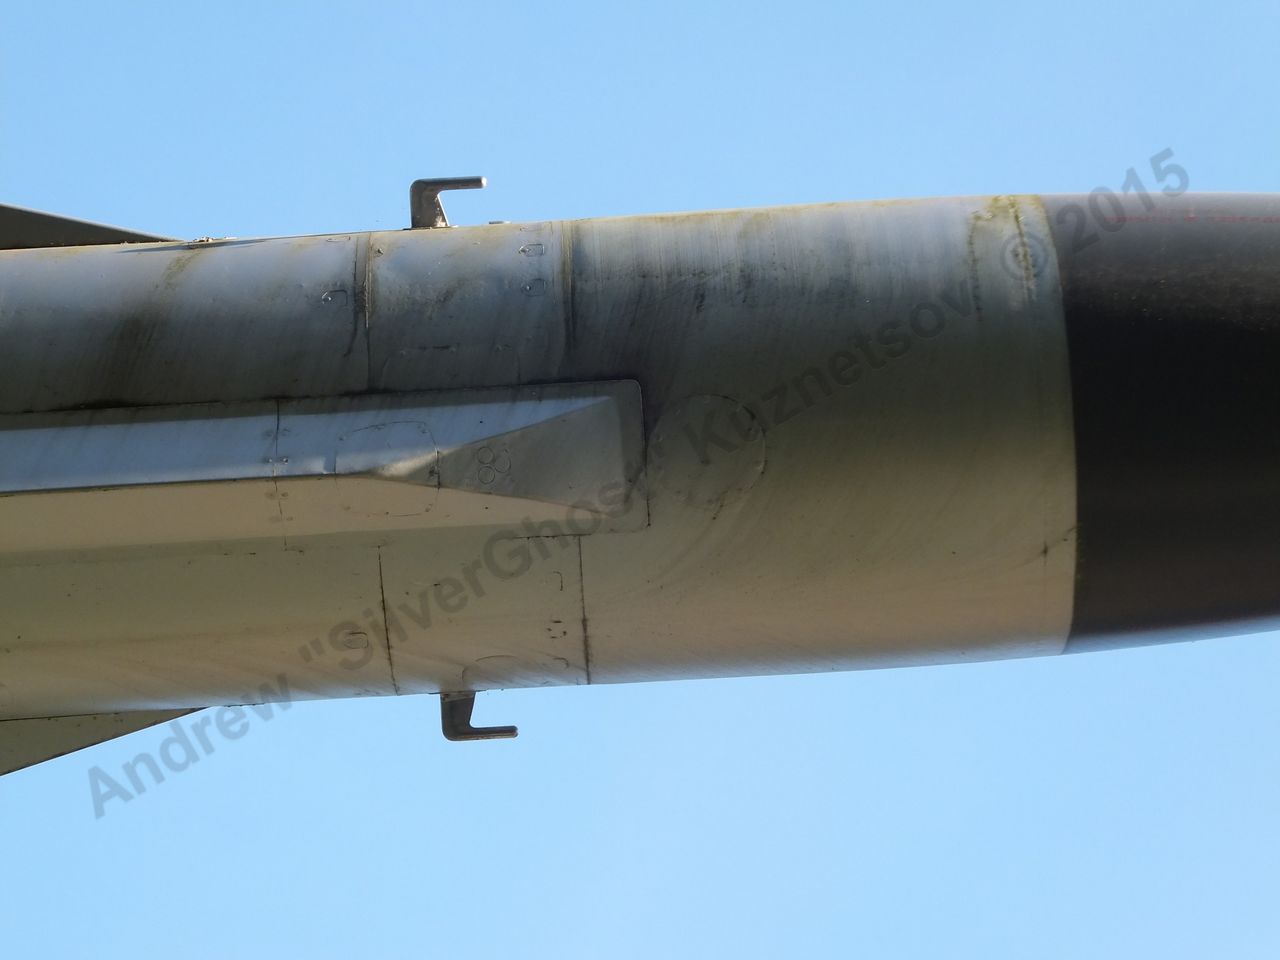 Kh-22 missile_0063.jpg